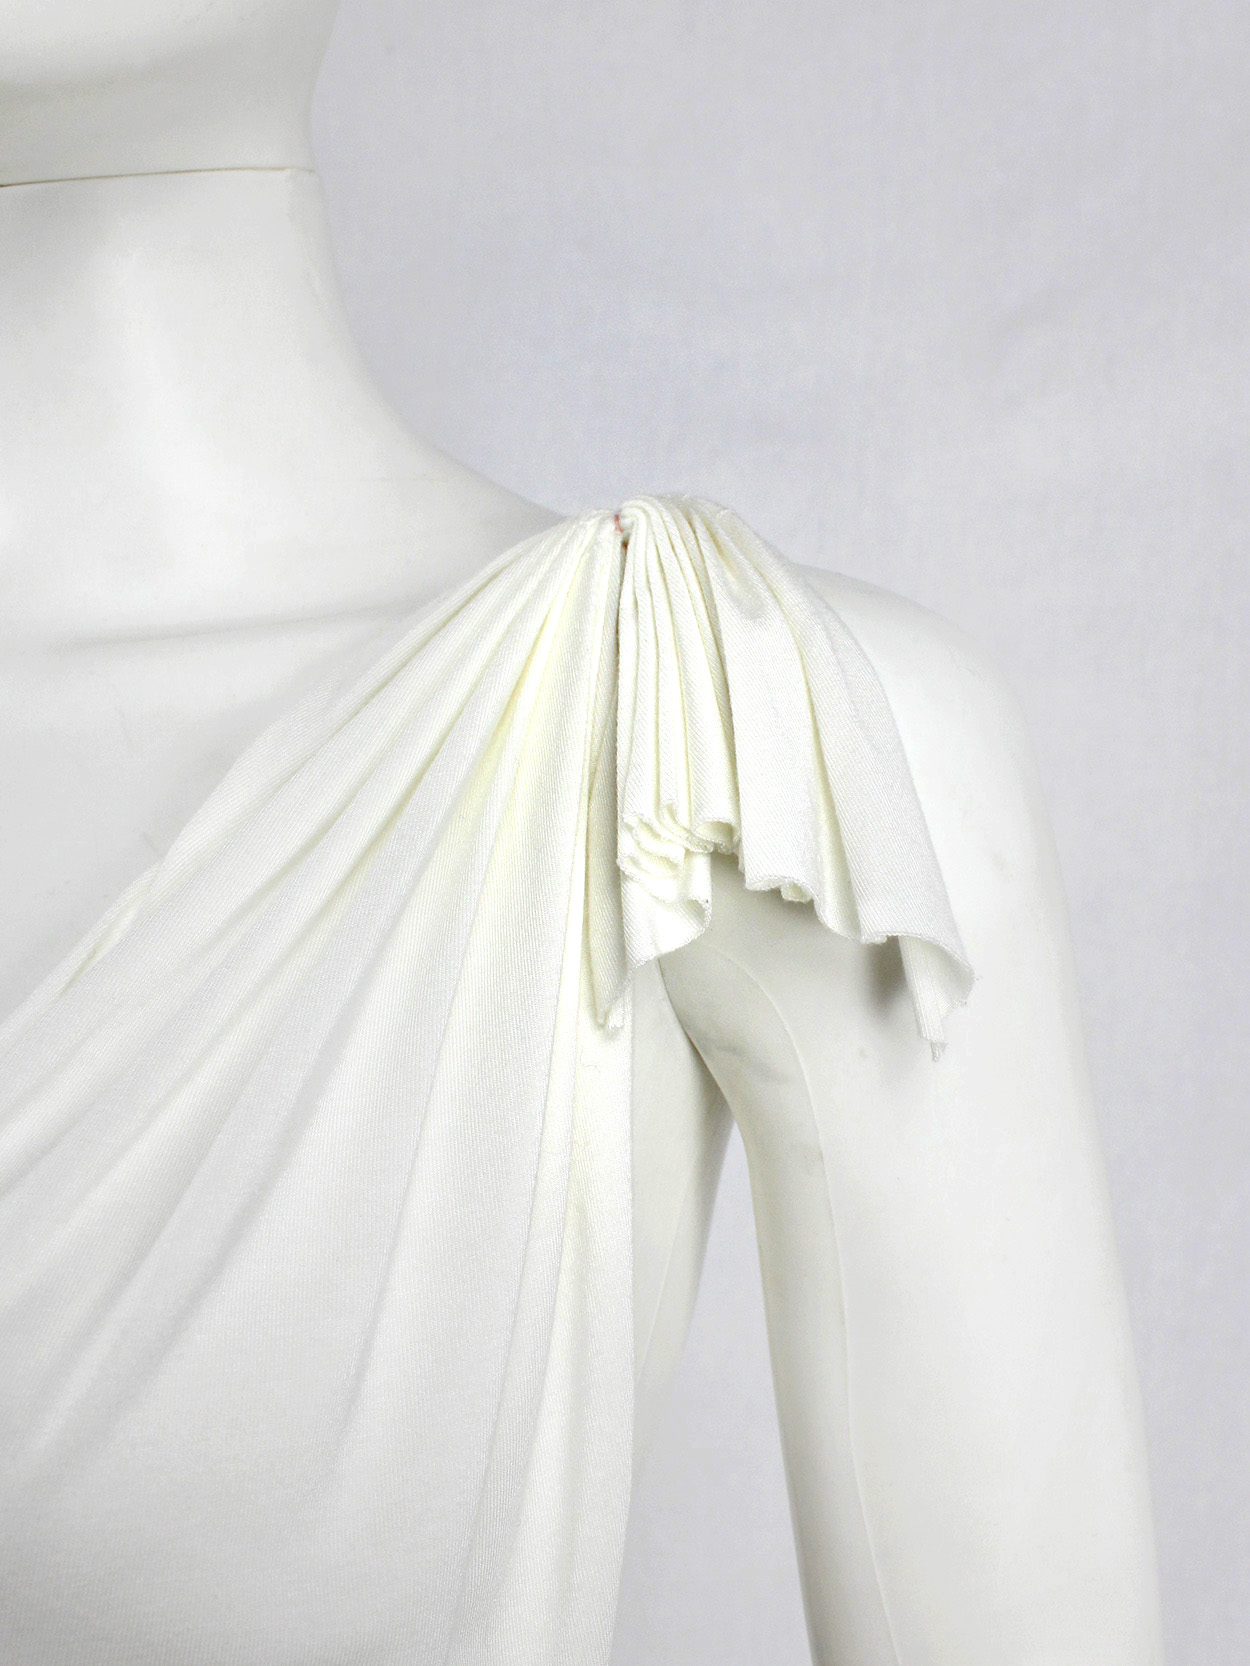 vaniitas vintage Maison Martin Margiela white floating dress with invisible straps spring 2005 6482